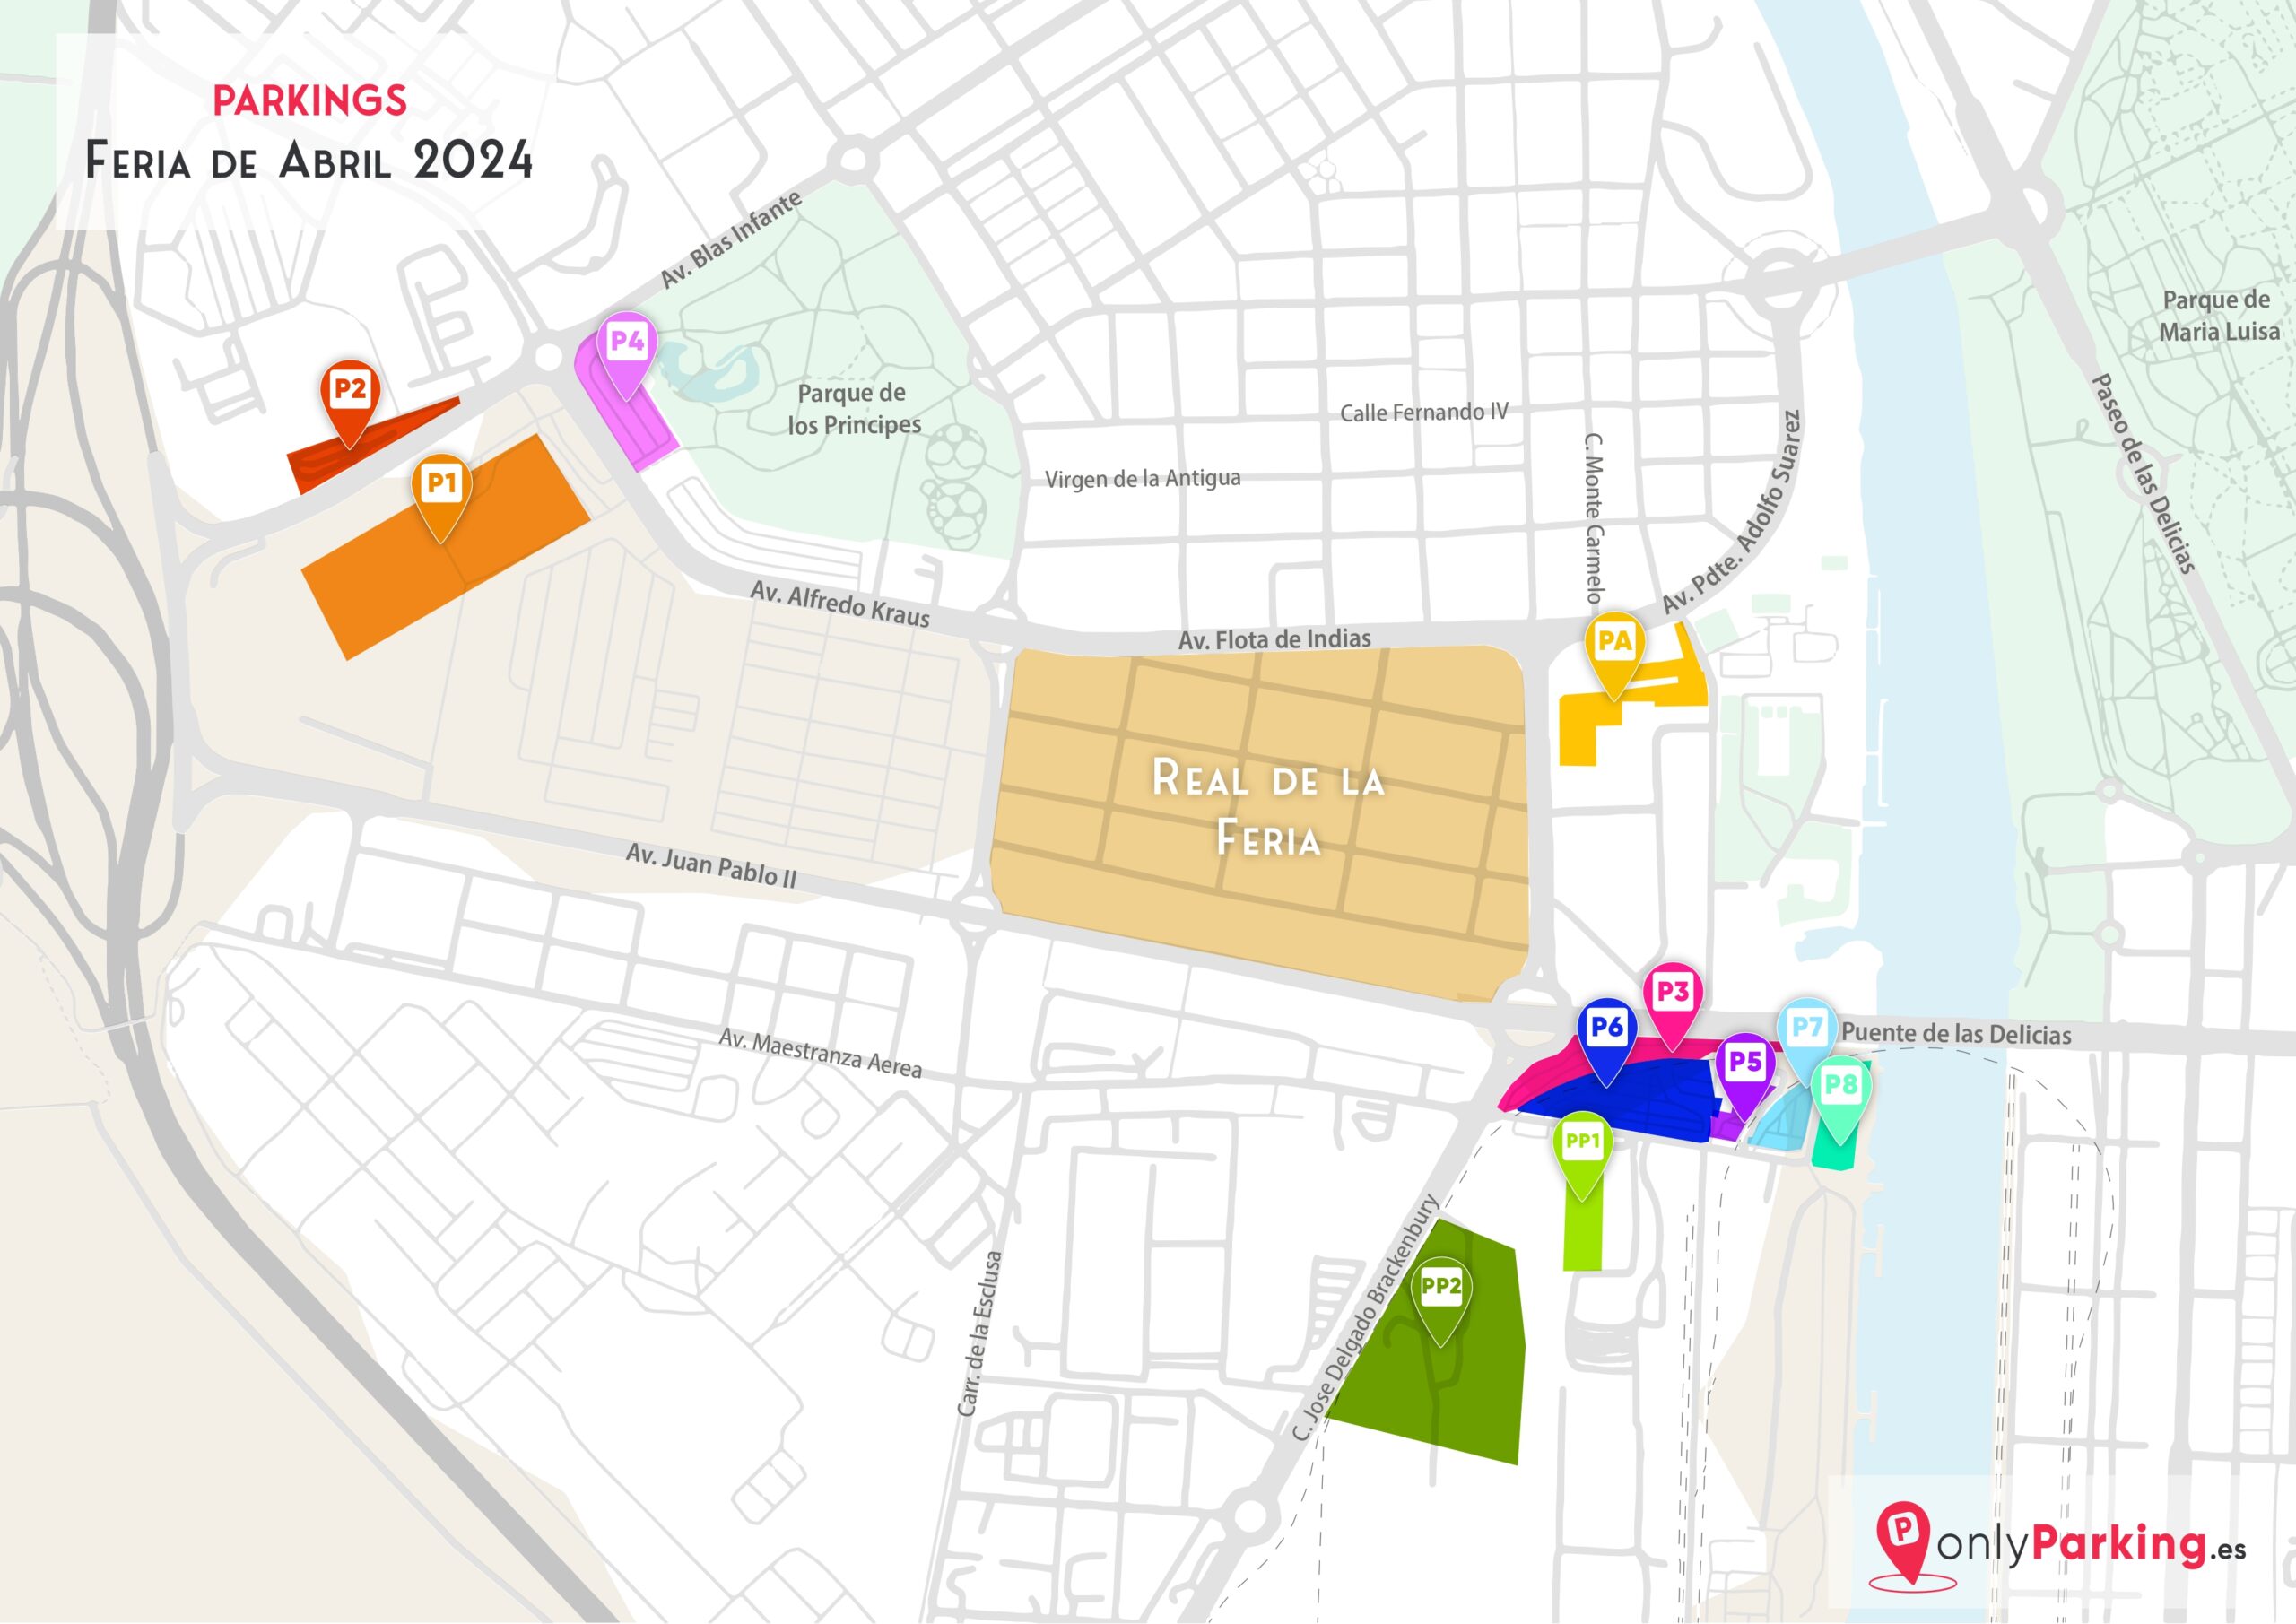 Seville April Fair Parking Map 2024